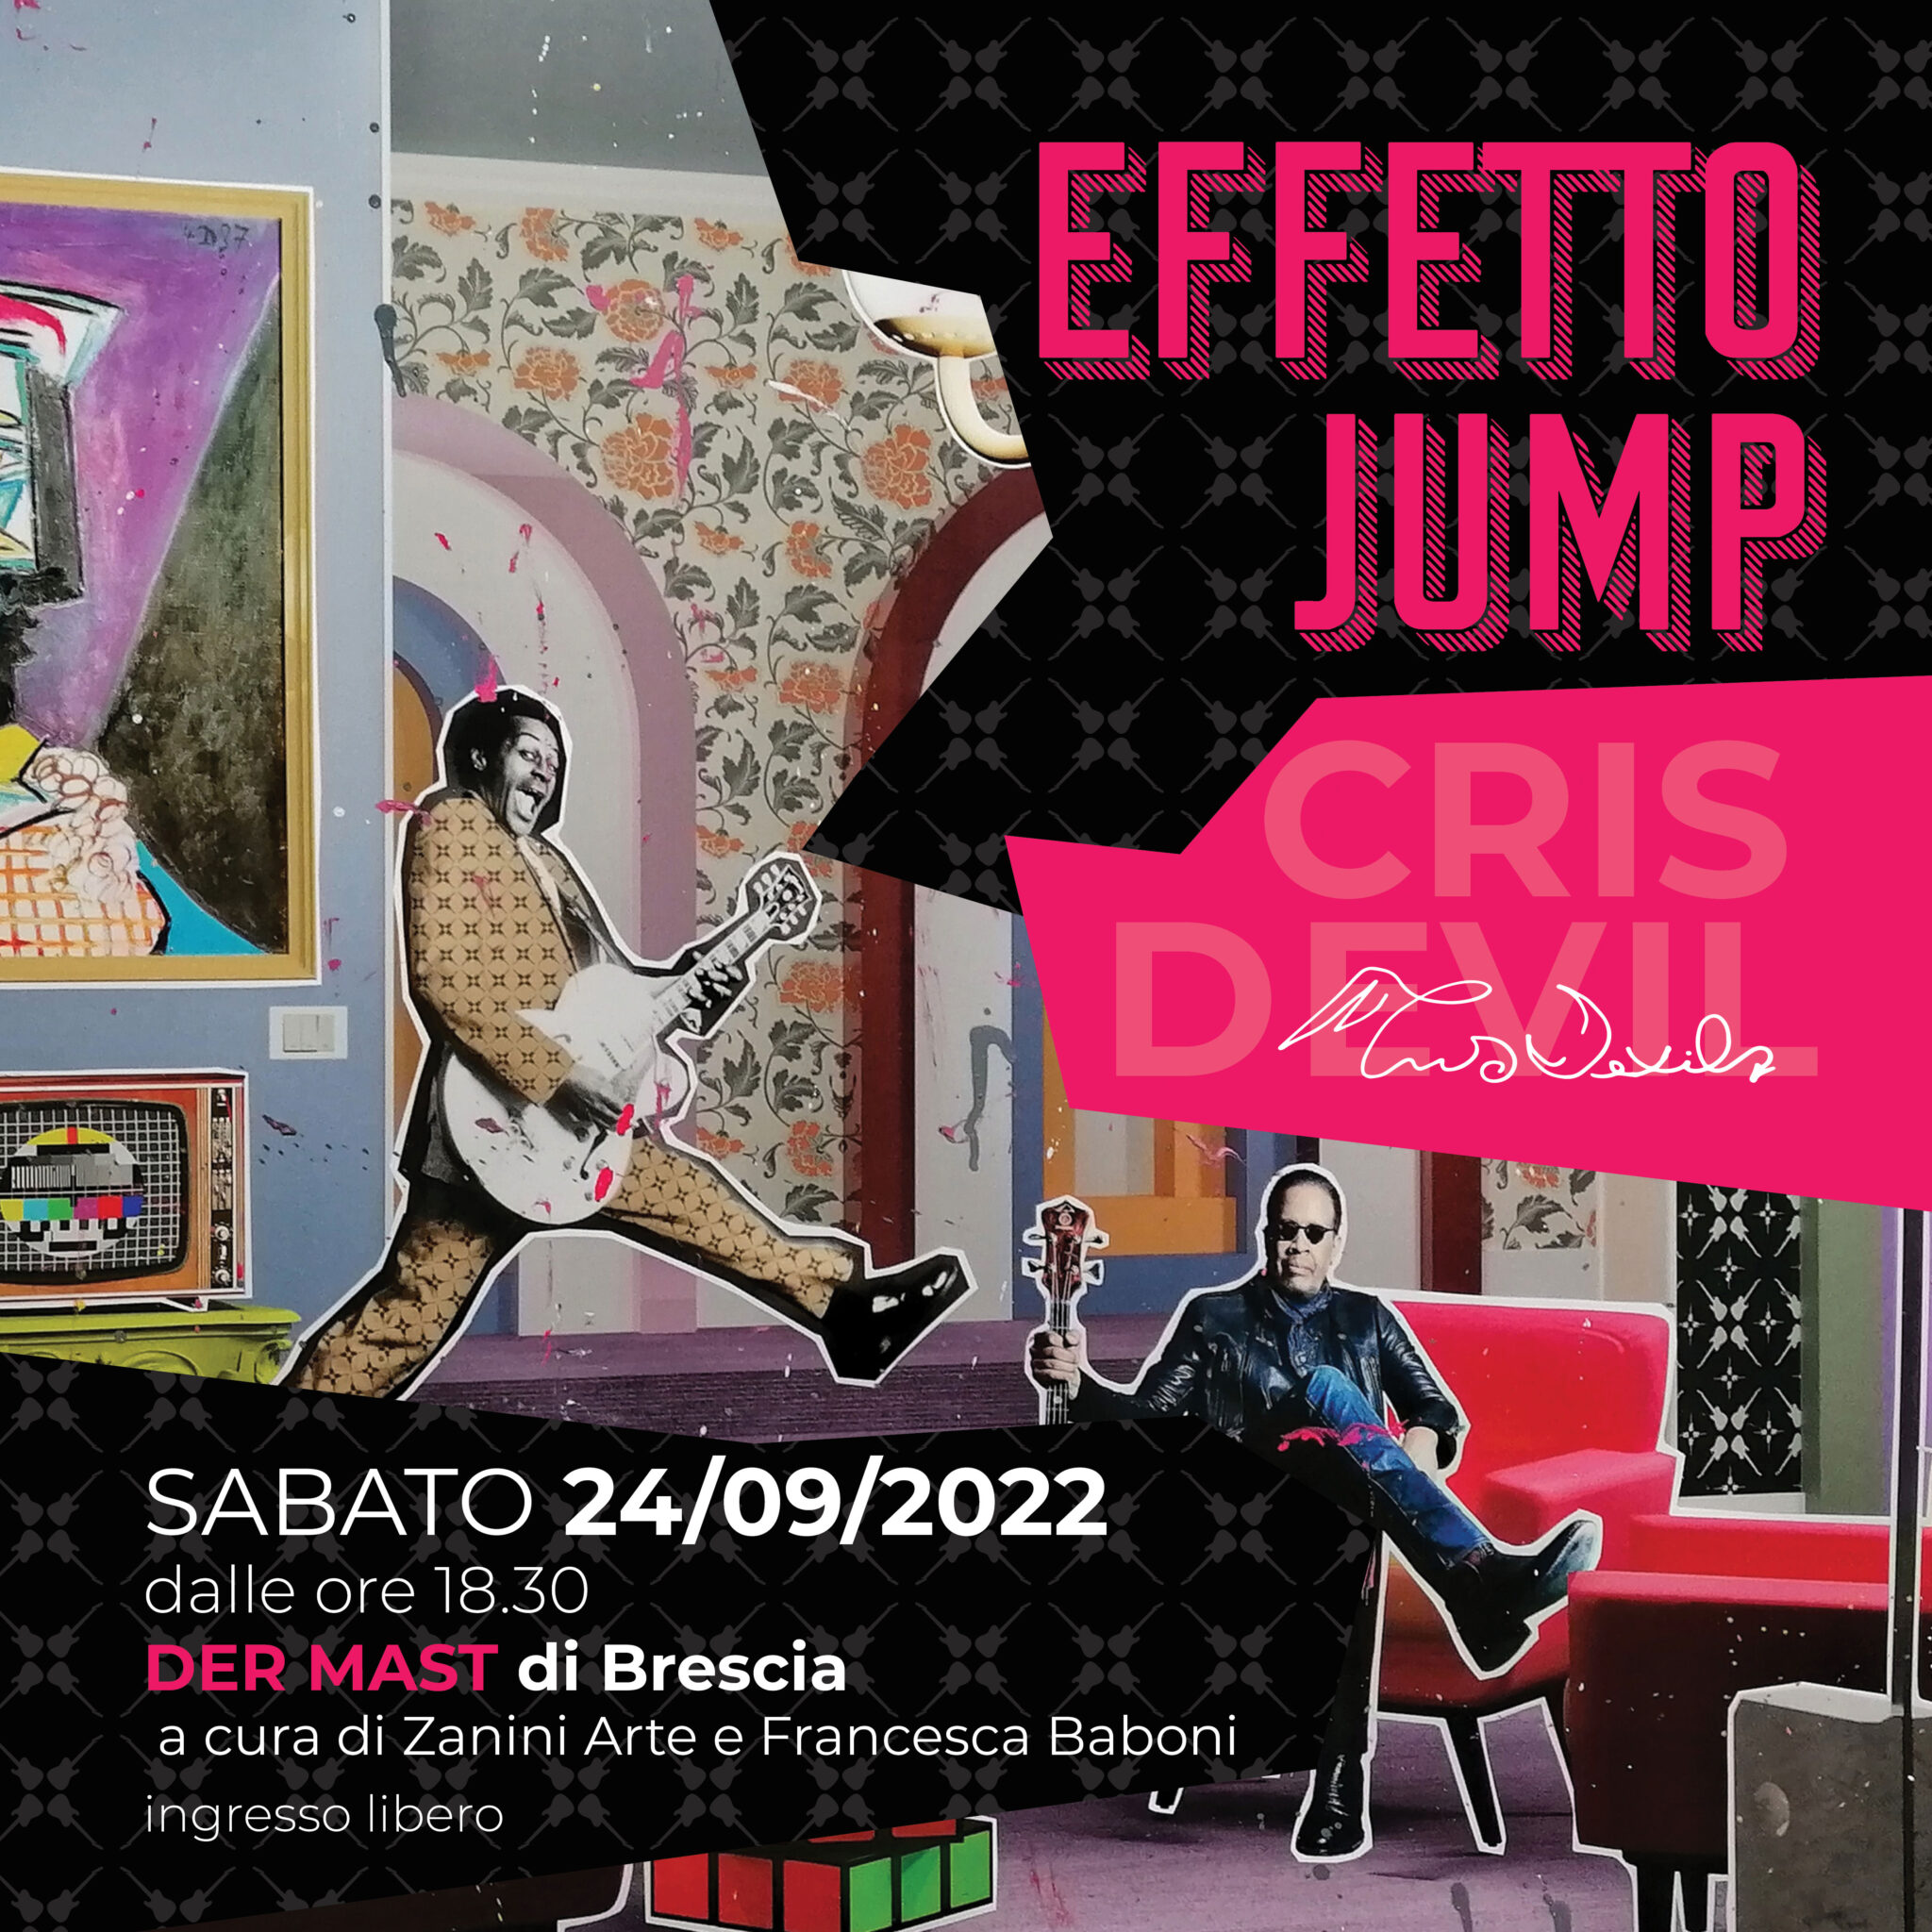 Evento / Mostra CRIS DEVIL "EFFETTO JUMP" 24.09.2022